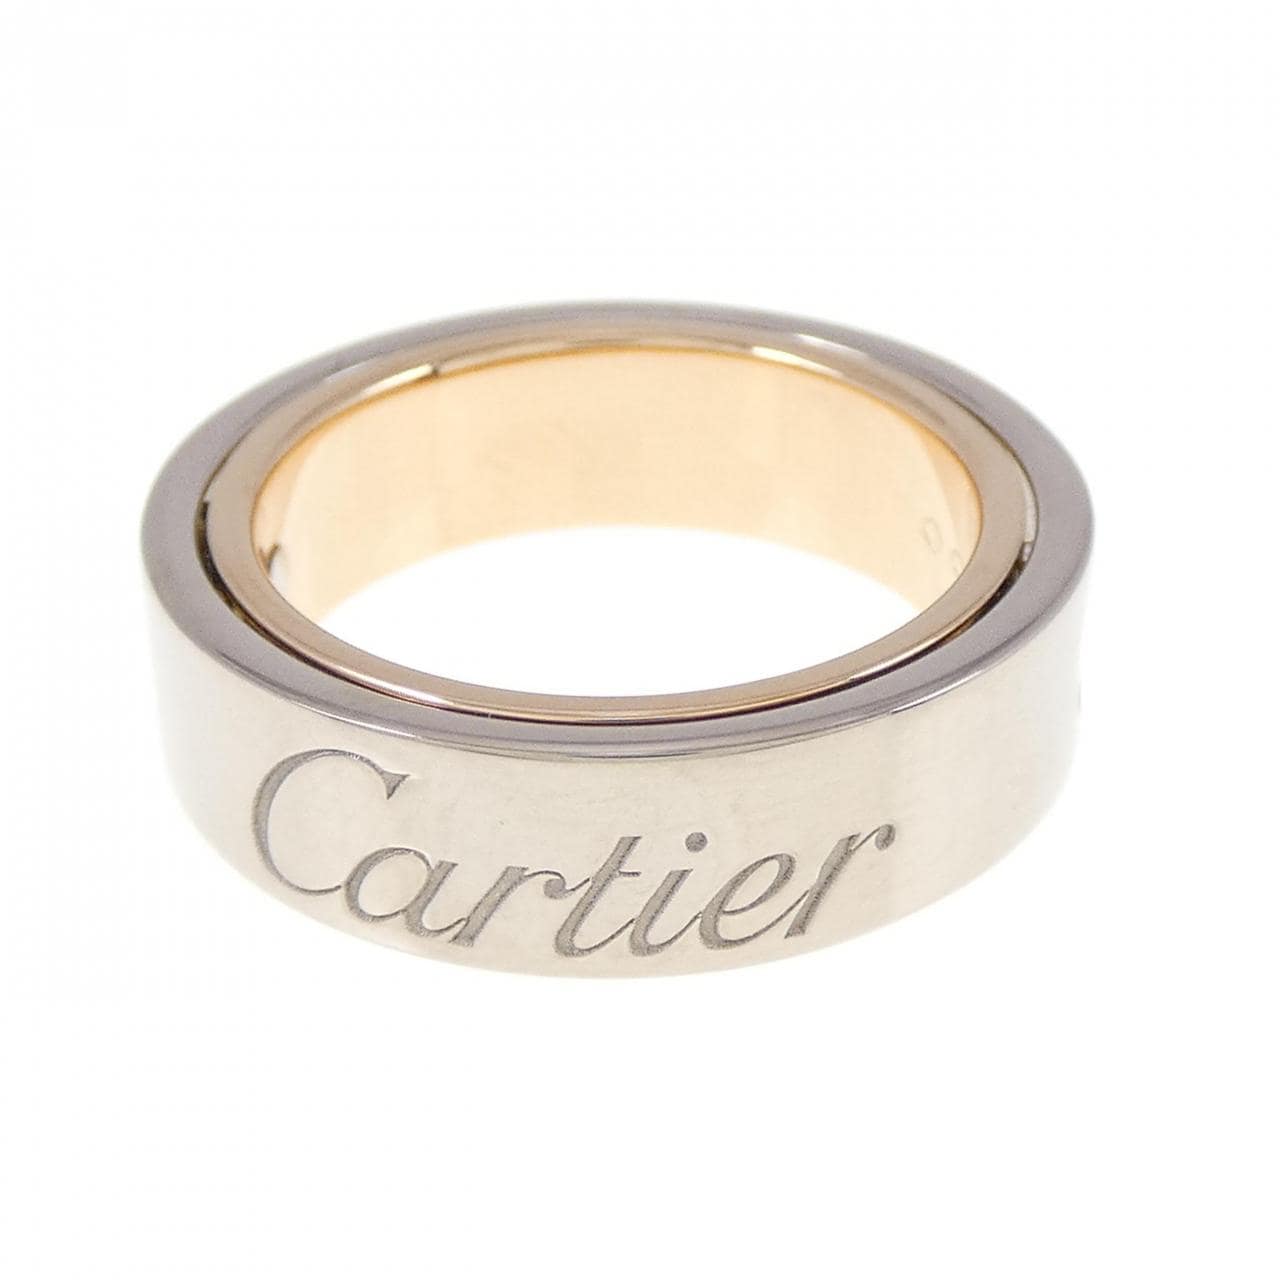 CARTIER LOVE Secret 戒指 2005 年聖誕限定戒指